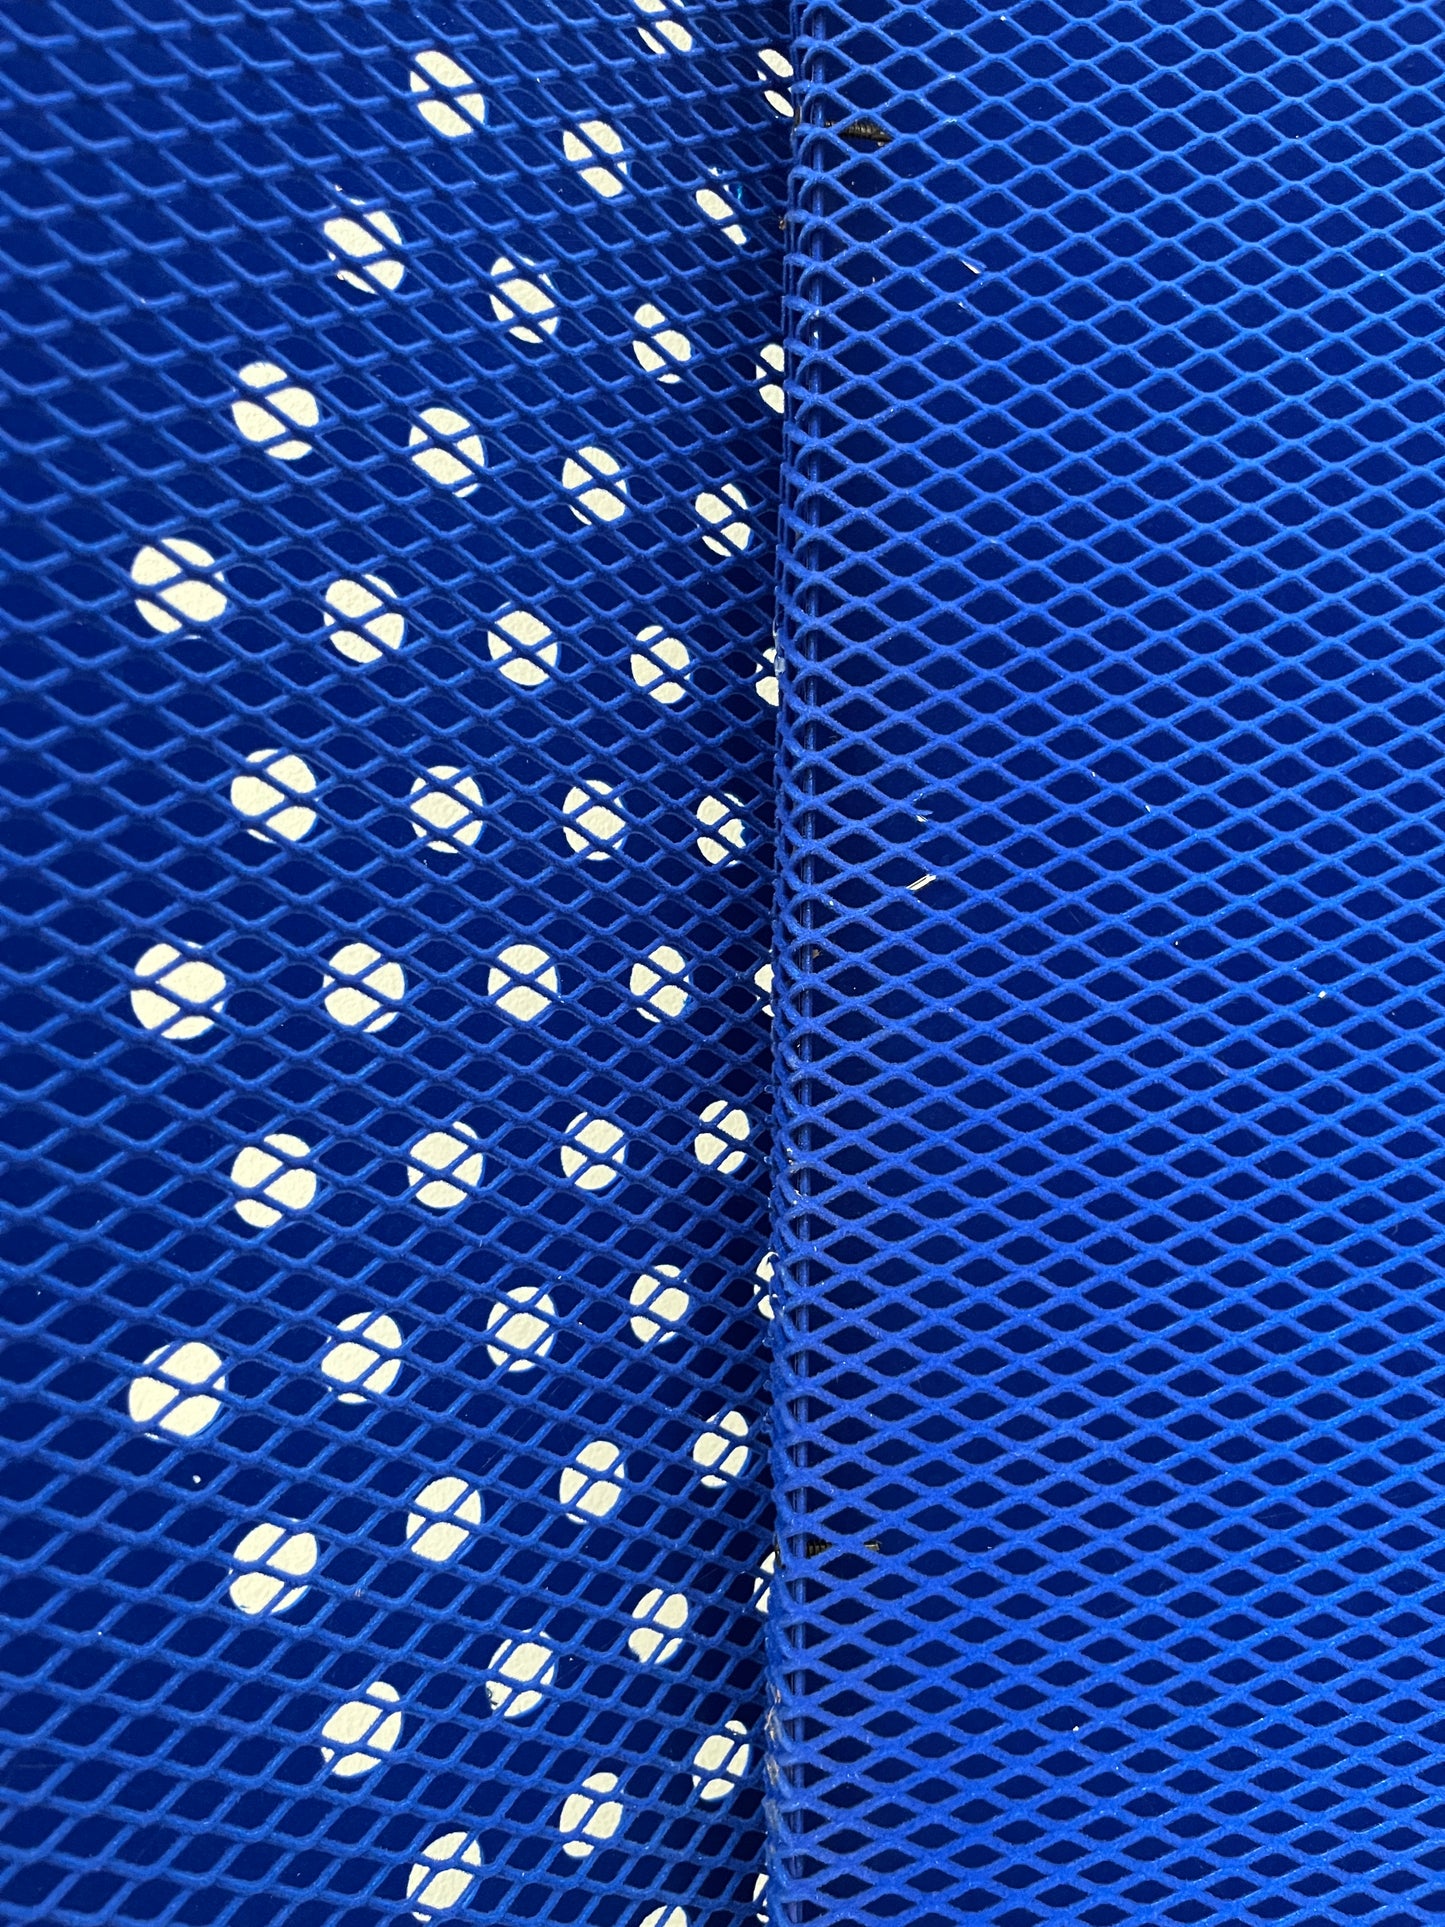 USED UP | Israeli Pavilion | Blue Metal Grids, 2.15.4